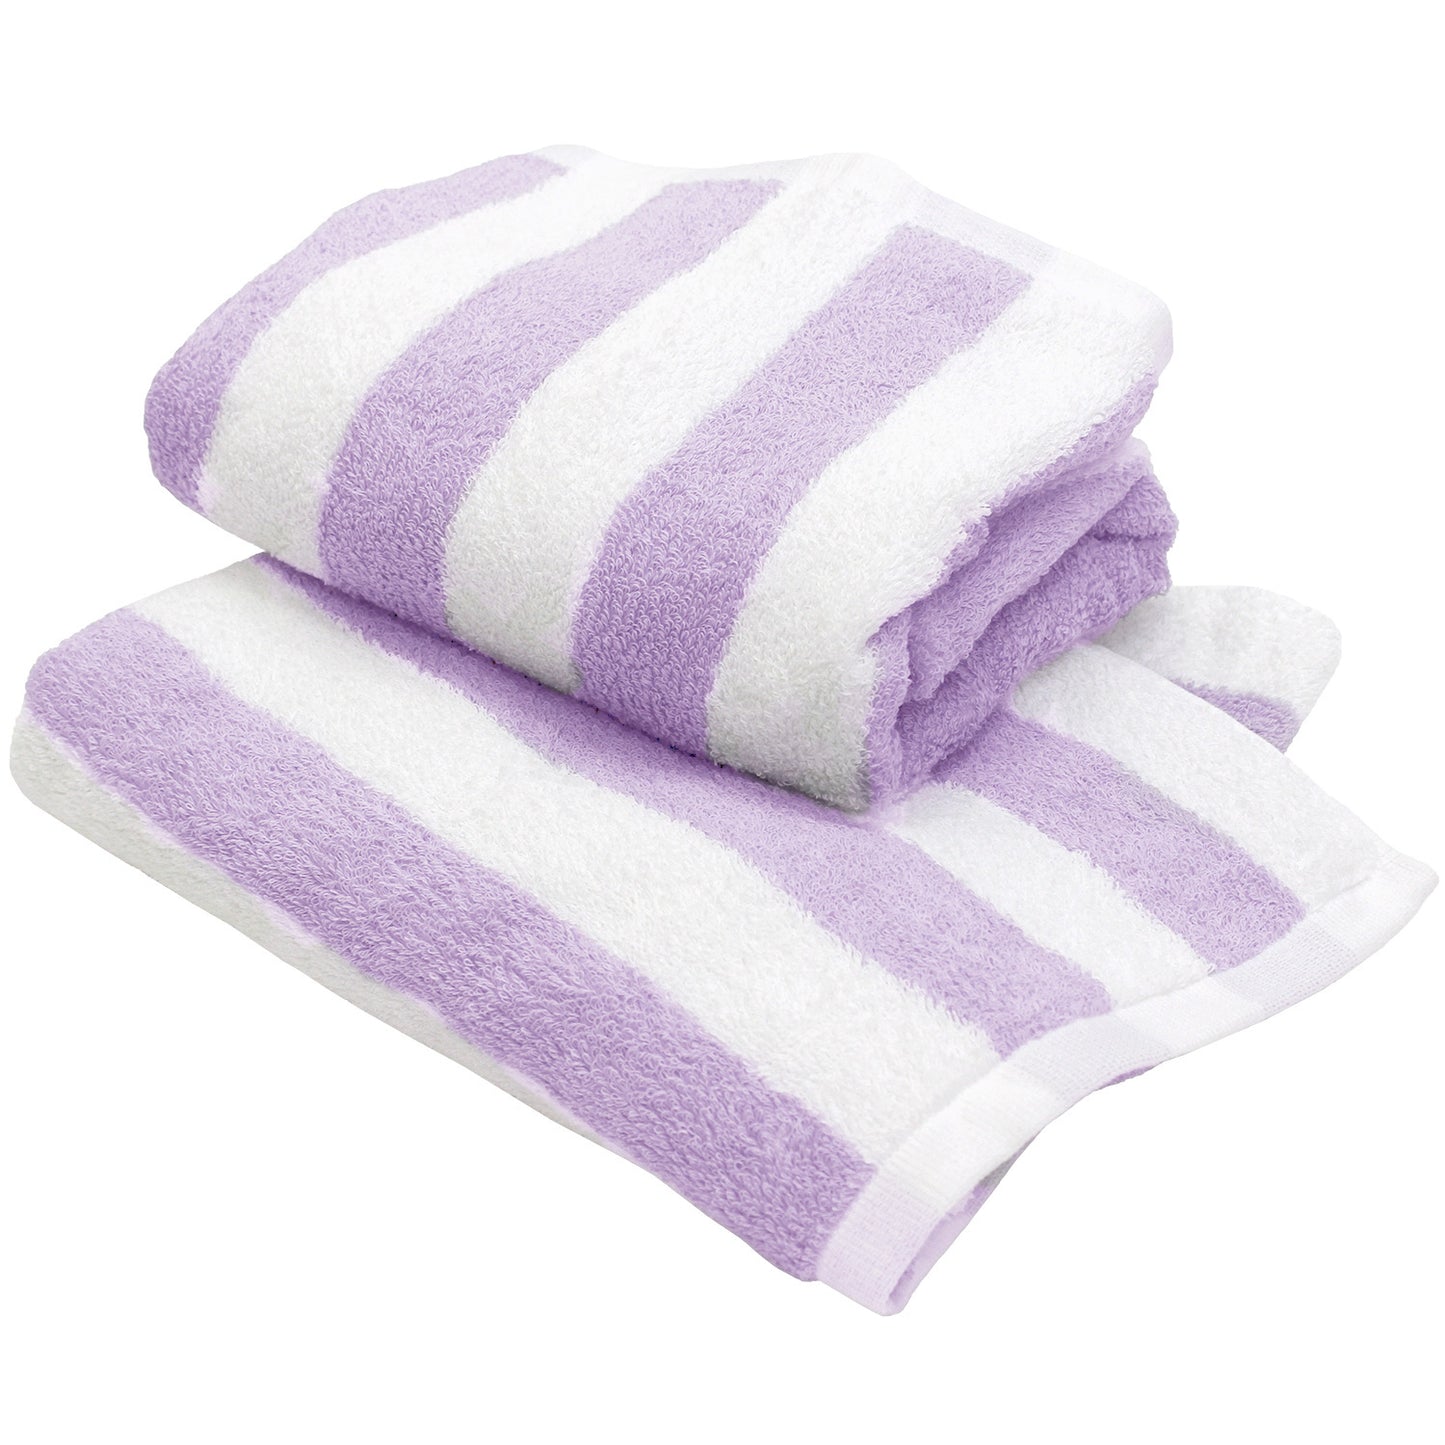 Hiorie Hotel Soft Stripe Wasseraufnahme-Badetuch 2 Blatt Baumwolle 100 % Japan